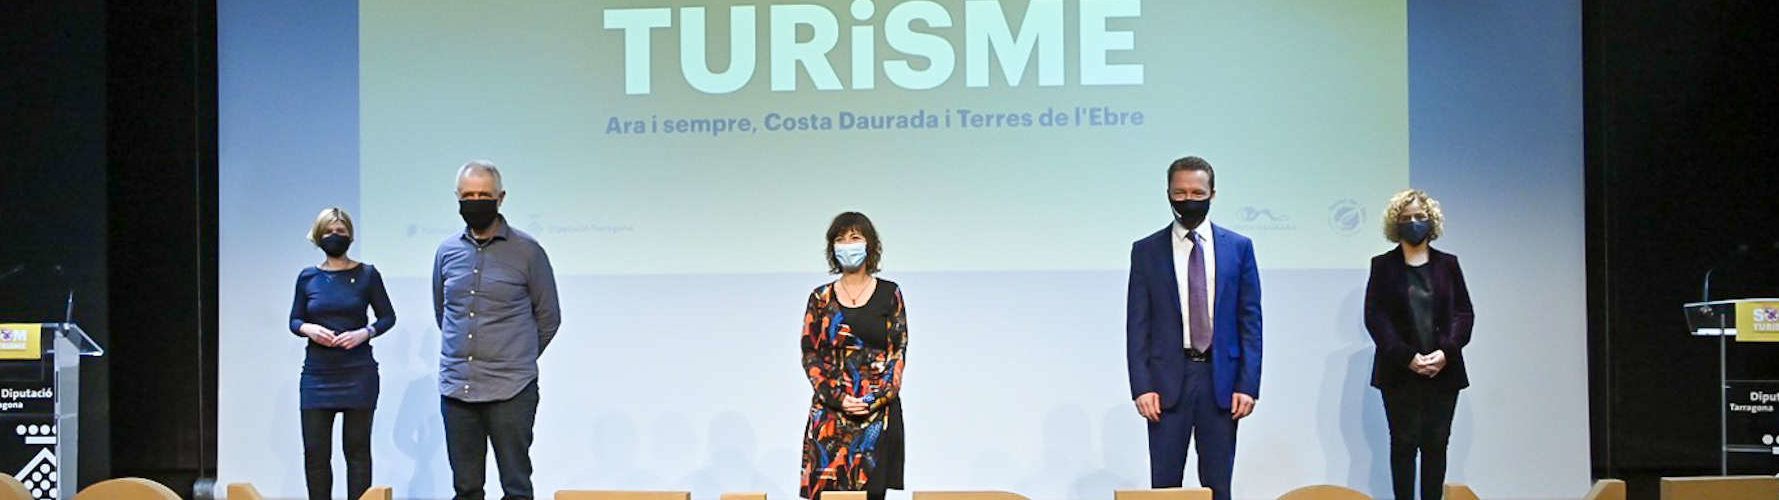 El Patronat de Turisme de la Diputació de Tarragona reconeix 6 iniciatives turístiques impulsades en el marc de la pandèmia